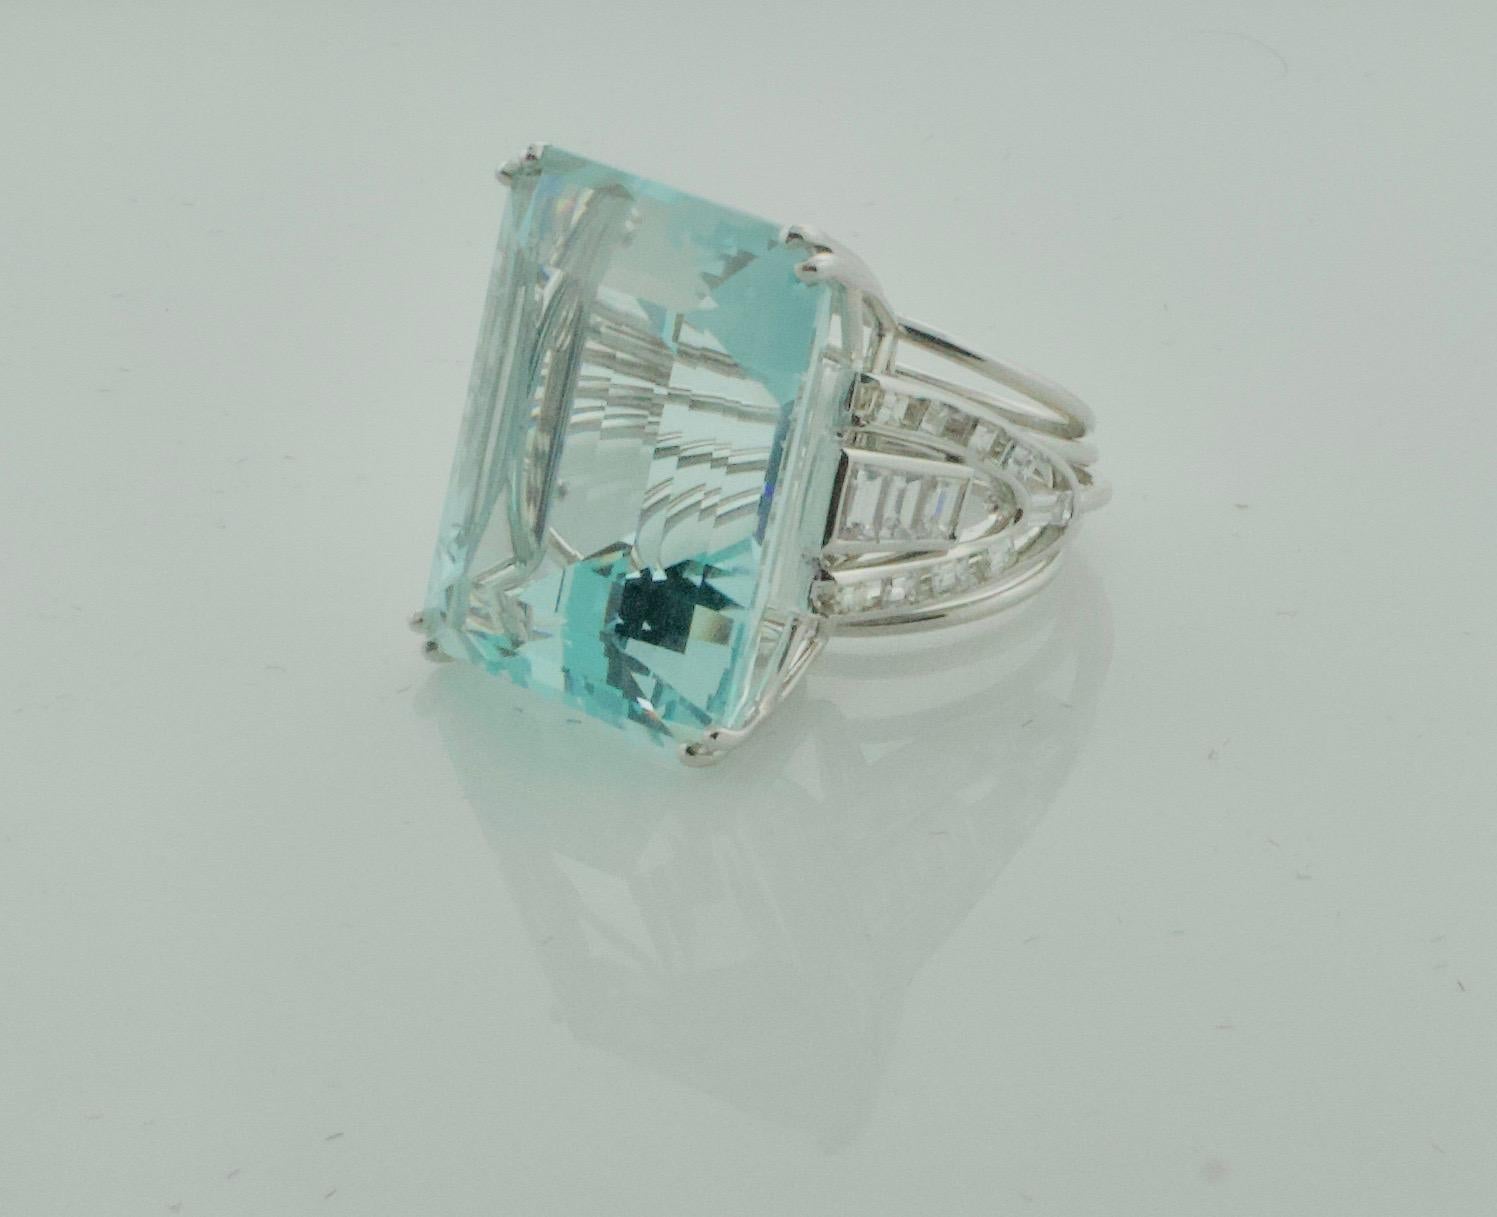 Emerald Cut Gigantic 56.65 Carat Aquamarine and Diamond Ring in White Gold